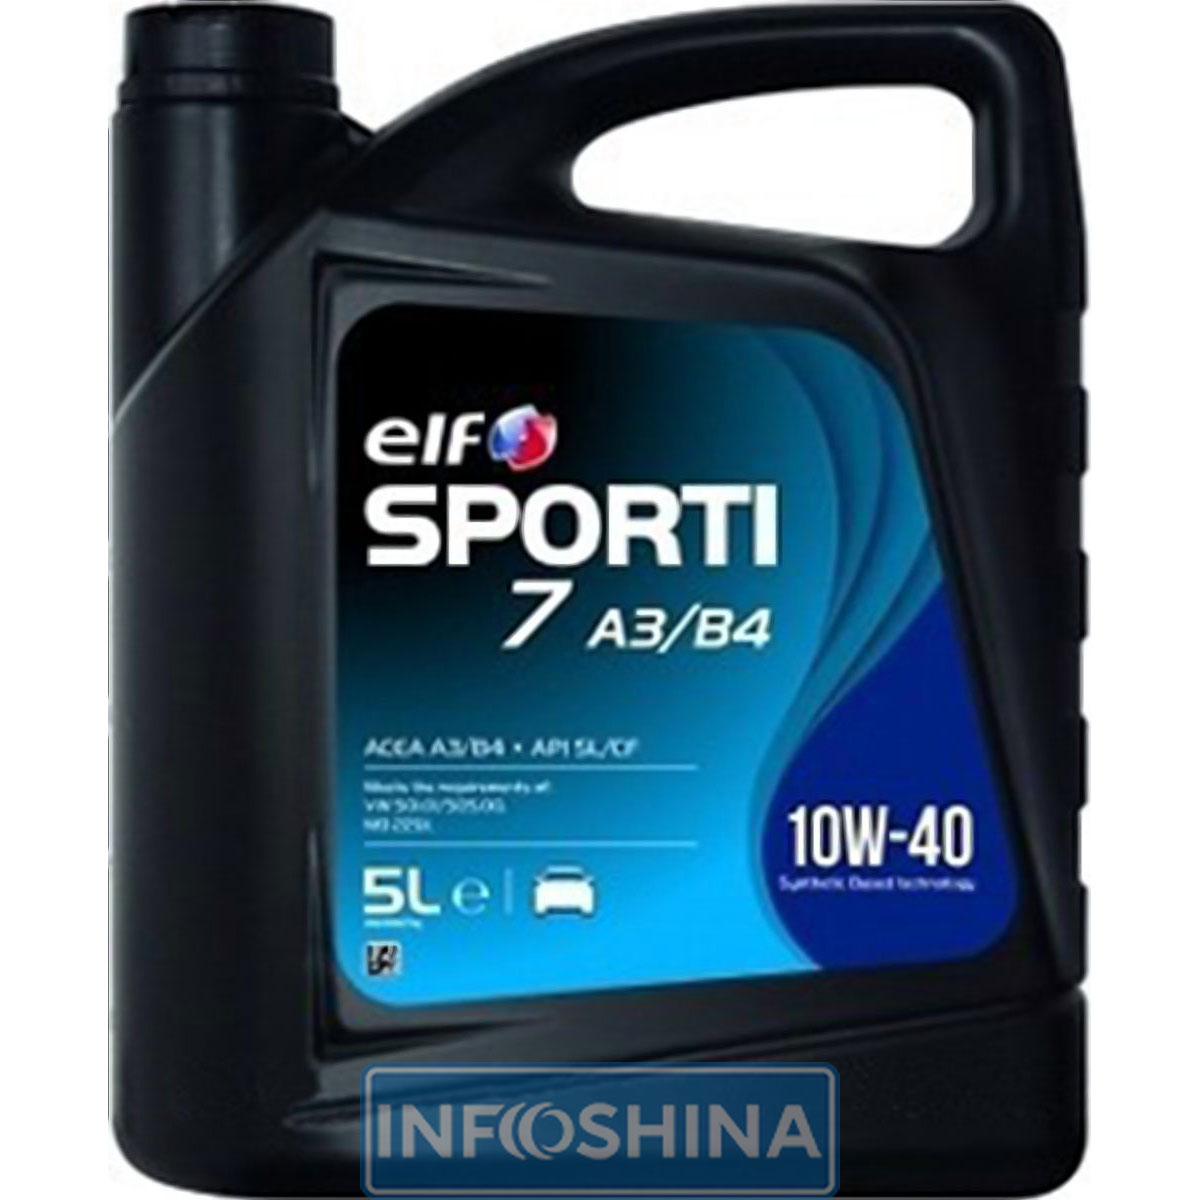 Купить масло ELF Sporti 7 10W-40 A3/B4 (5л)